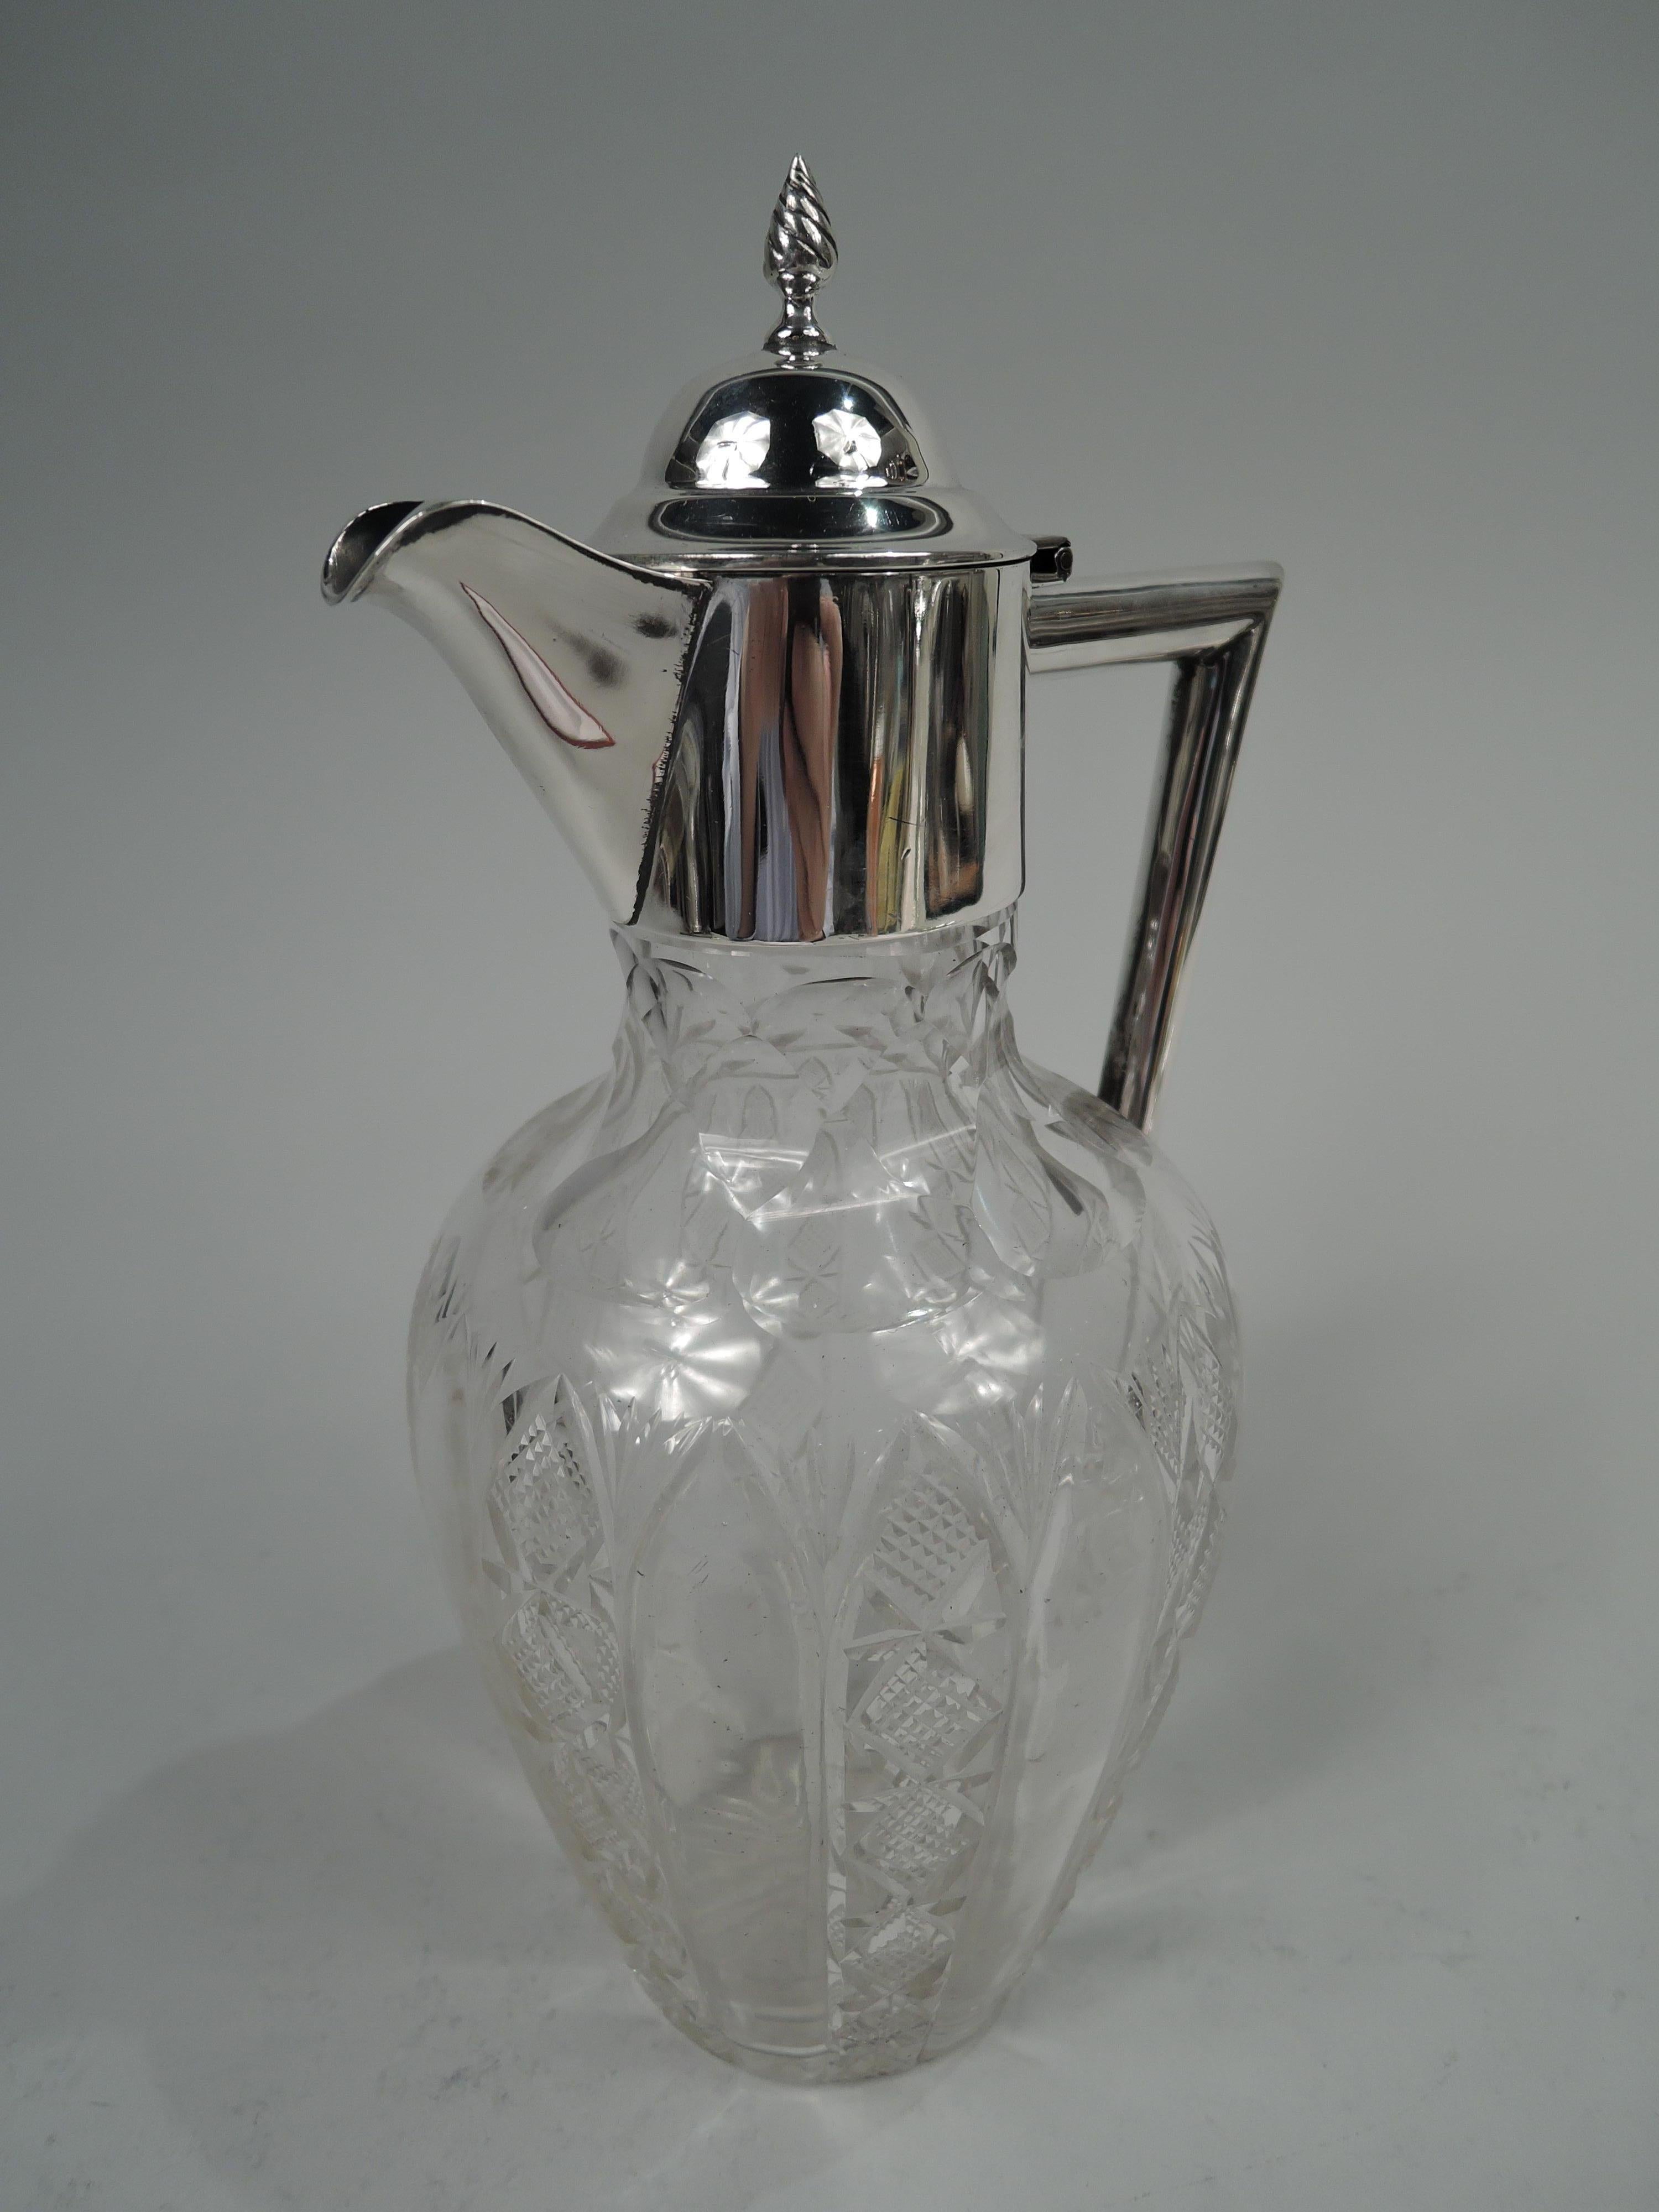 Carafe édouardienne en argent et verre taillé. Fabriqué par William Aitken à Birmingham en 1902. Bol ovoïde en verre. Sur les côtés, des cannelures simples alternent avec des cannelures en forme d'aiguille ; l'épaulement présente des facettes